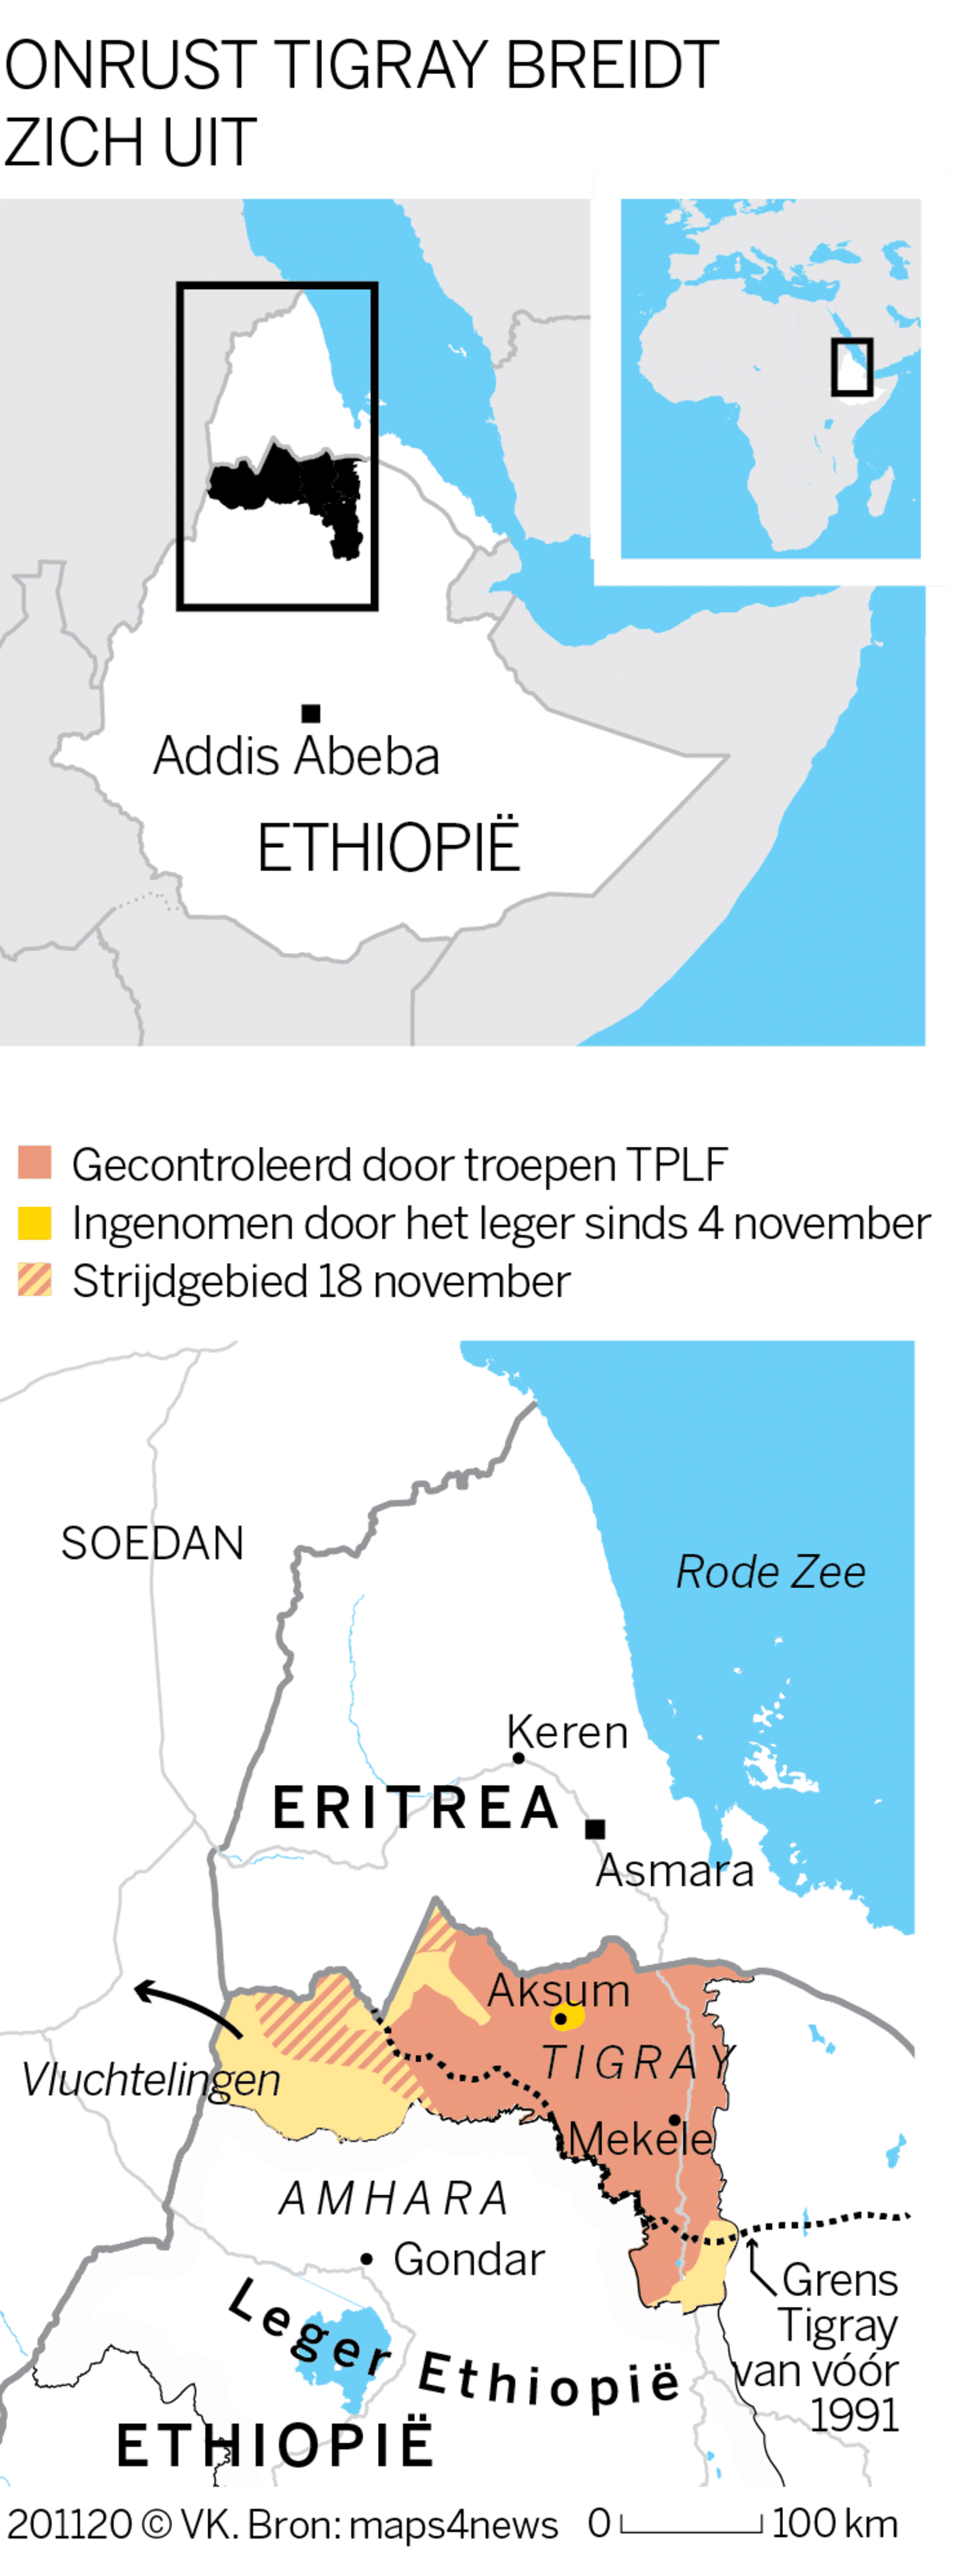 ‘Alles is weer normaal’, zegt Ethiopische regering. Maar uit Tigray komen steeds gruwelijker verhalen